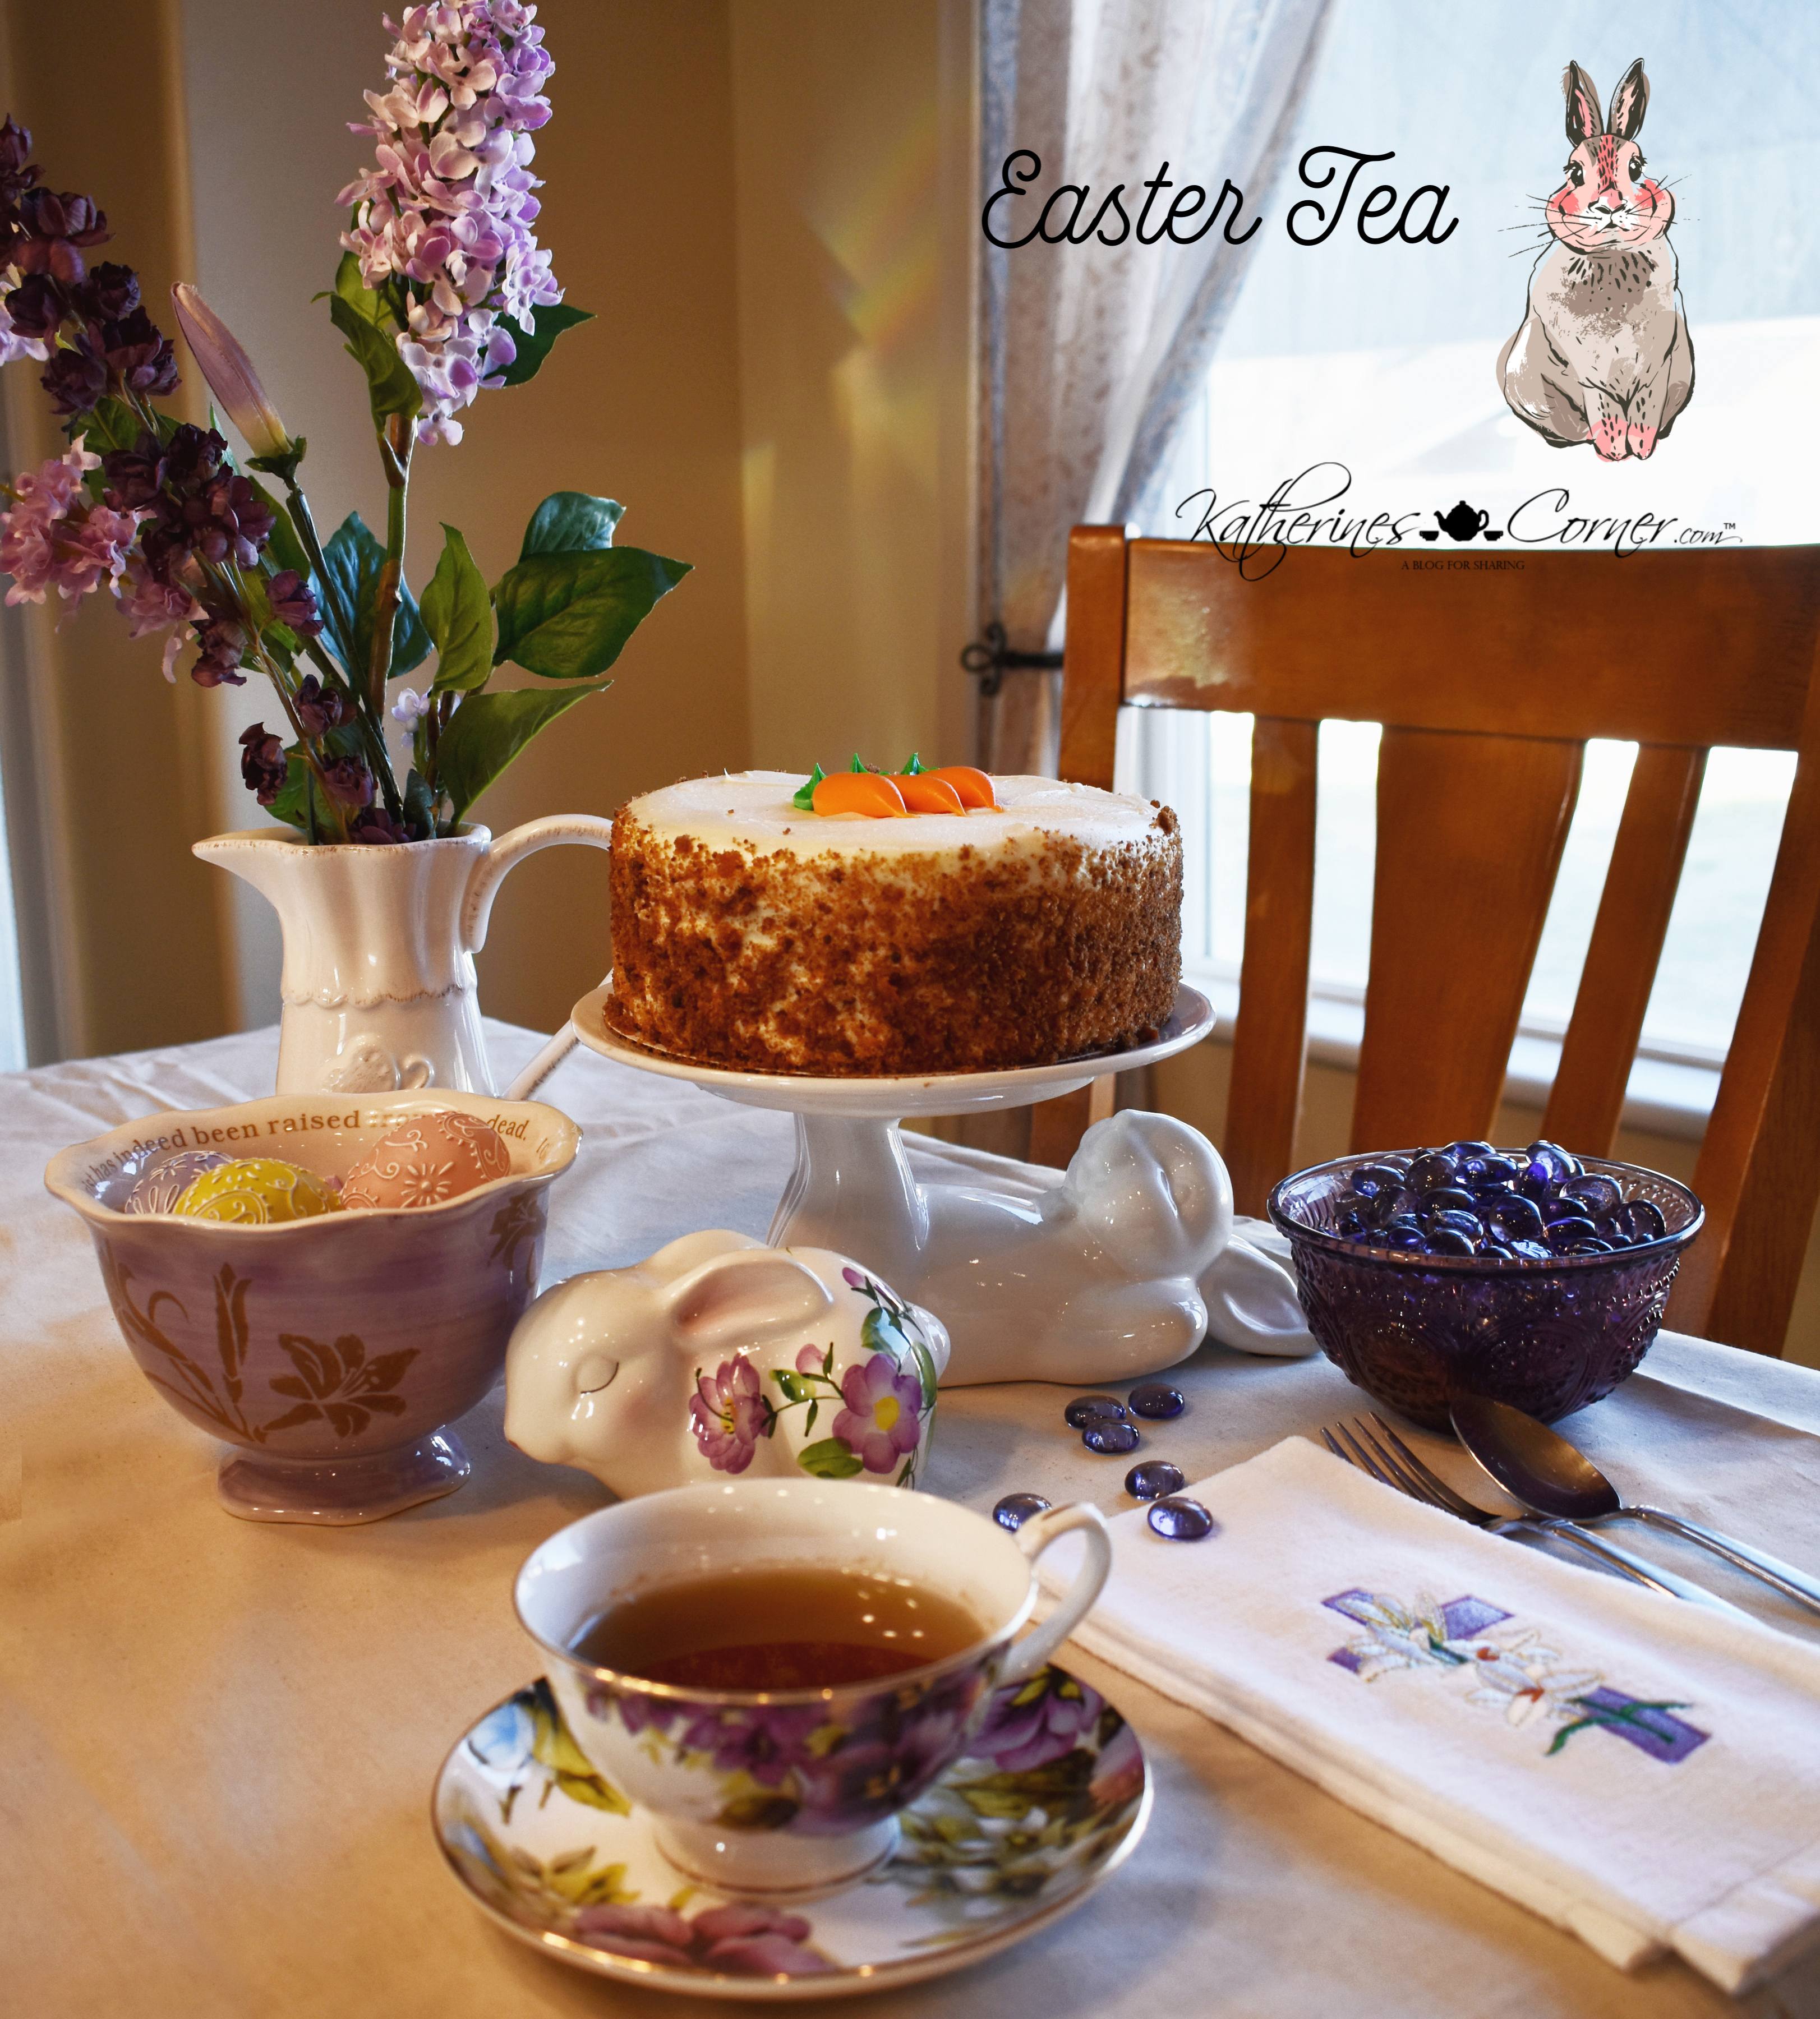 Easter Tea and Carrot Cake